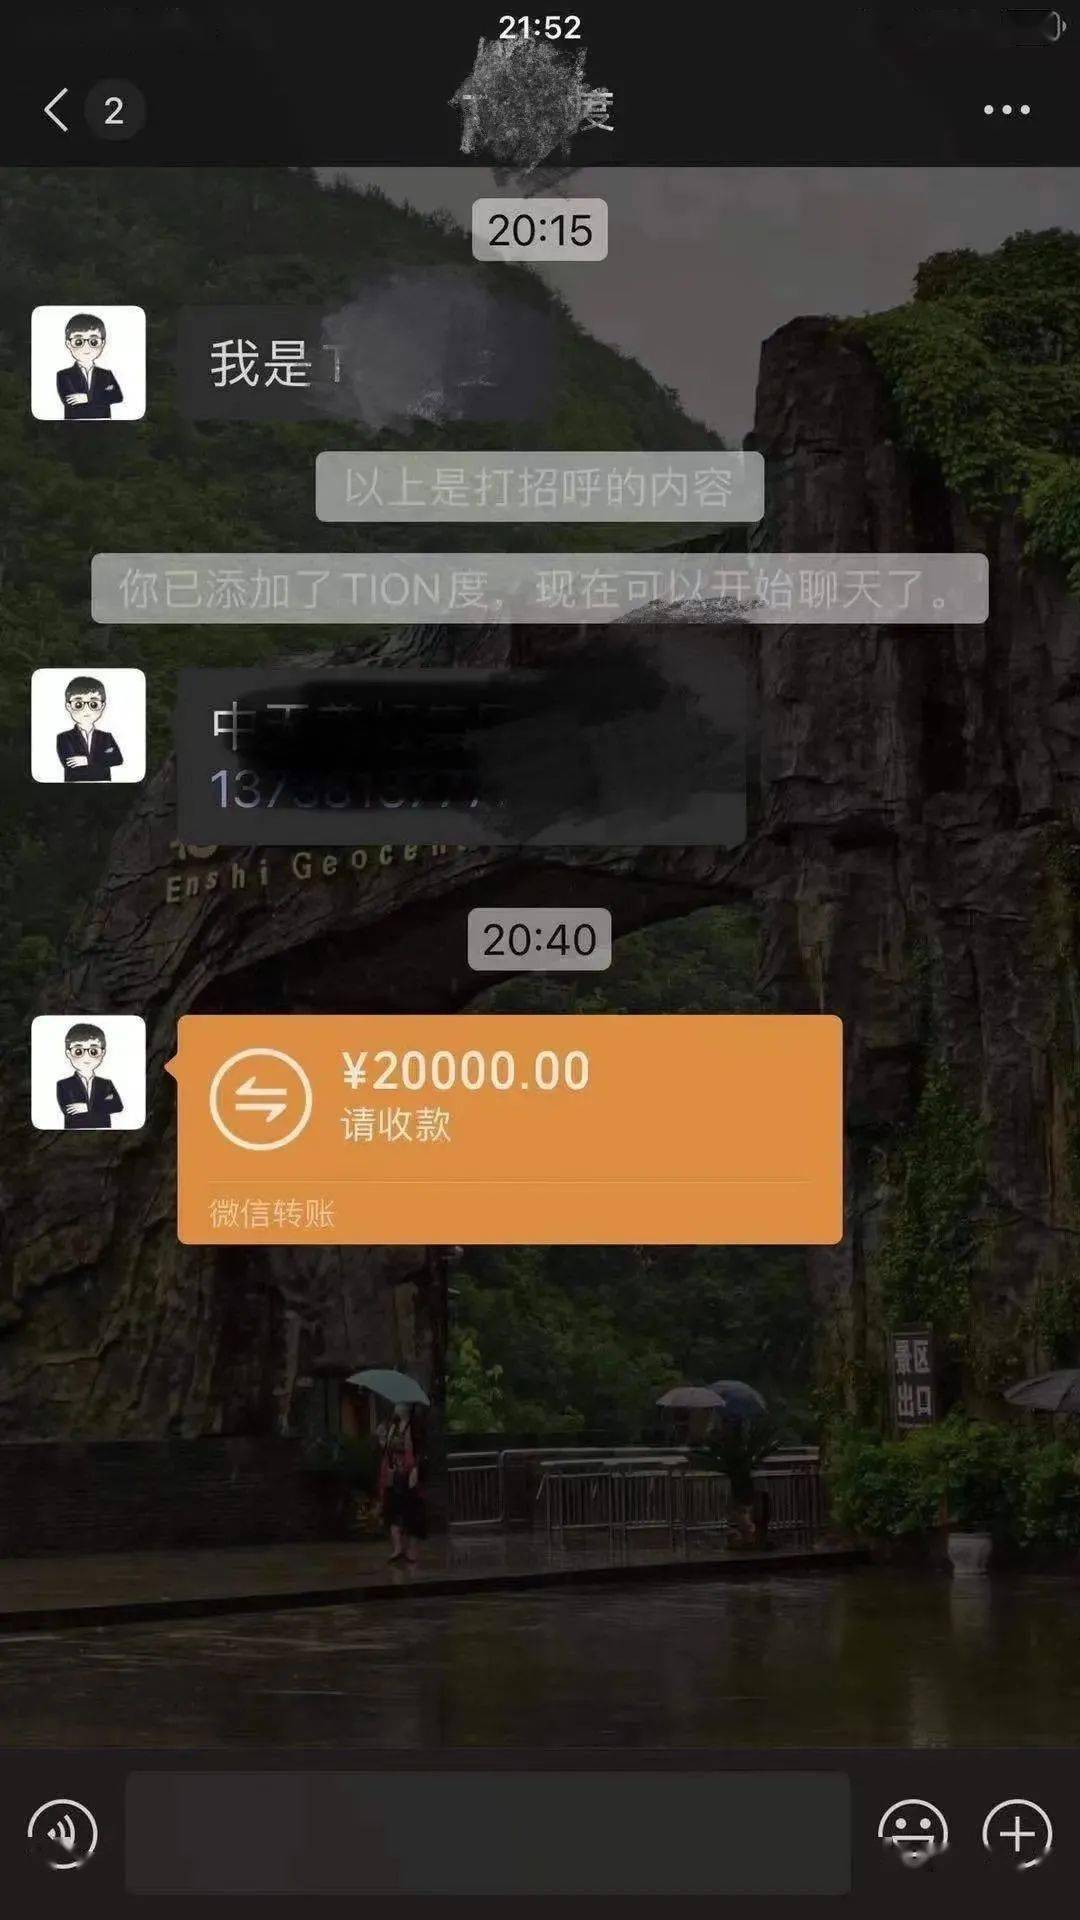 第一次见面就转账2万元杭州网约车司机被接下来的一幕惊到了